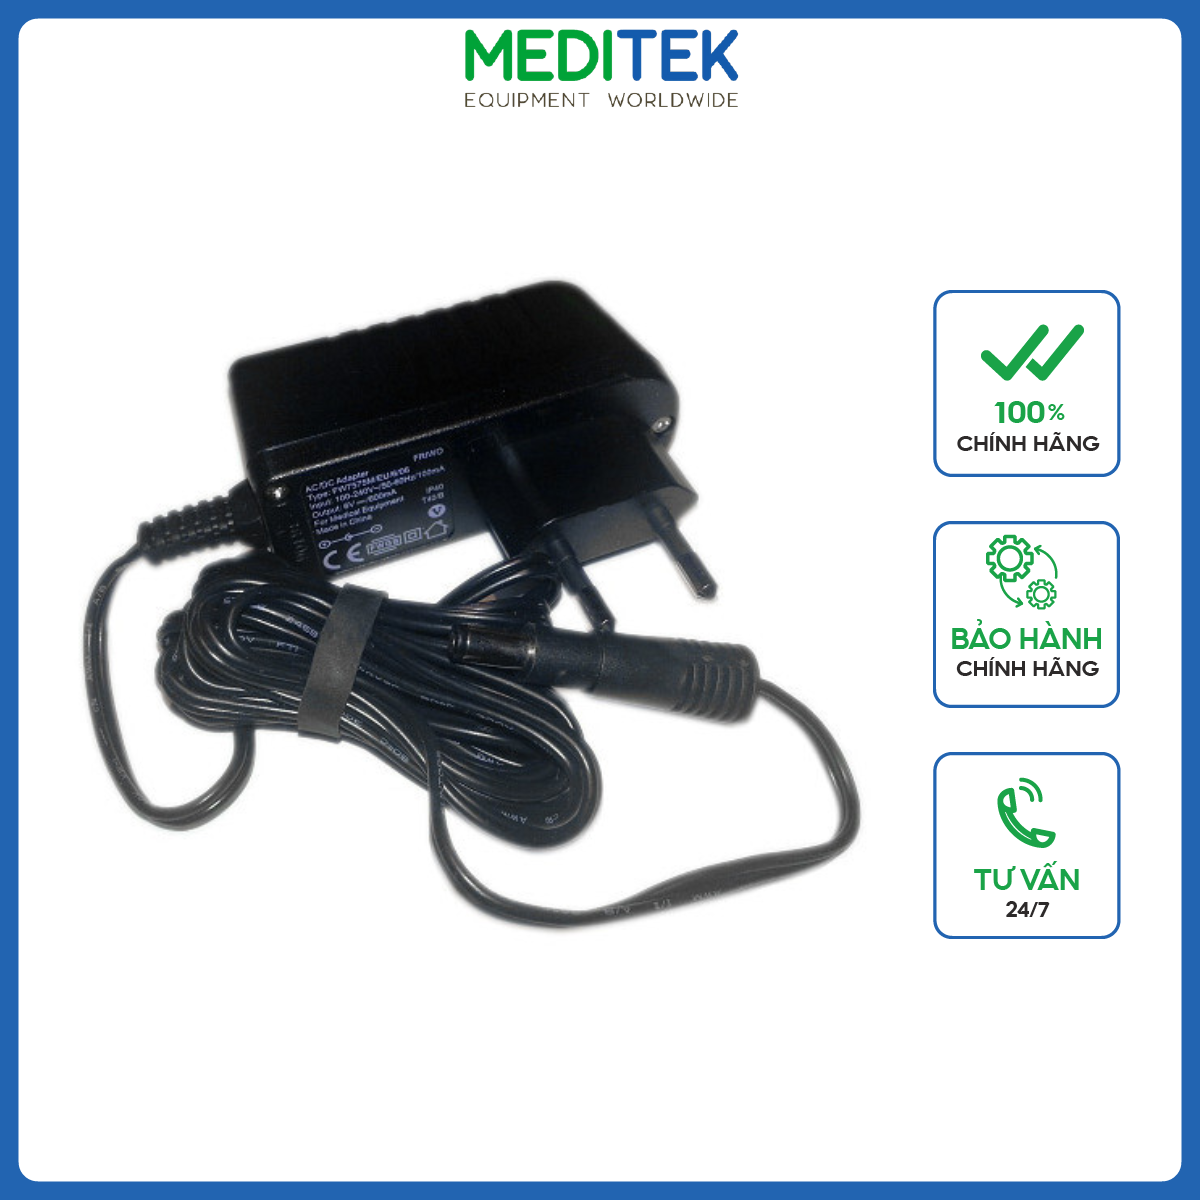 Bộ đổi nguồn Adapter cho máy đo huyết Beurer